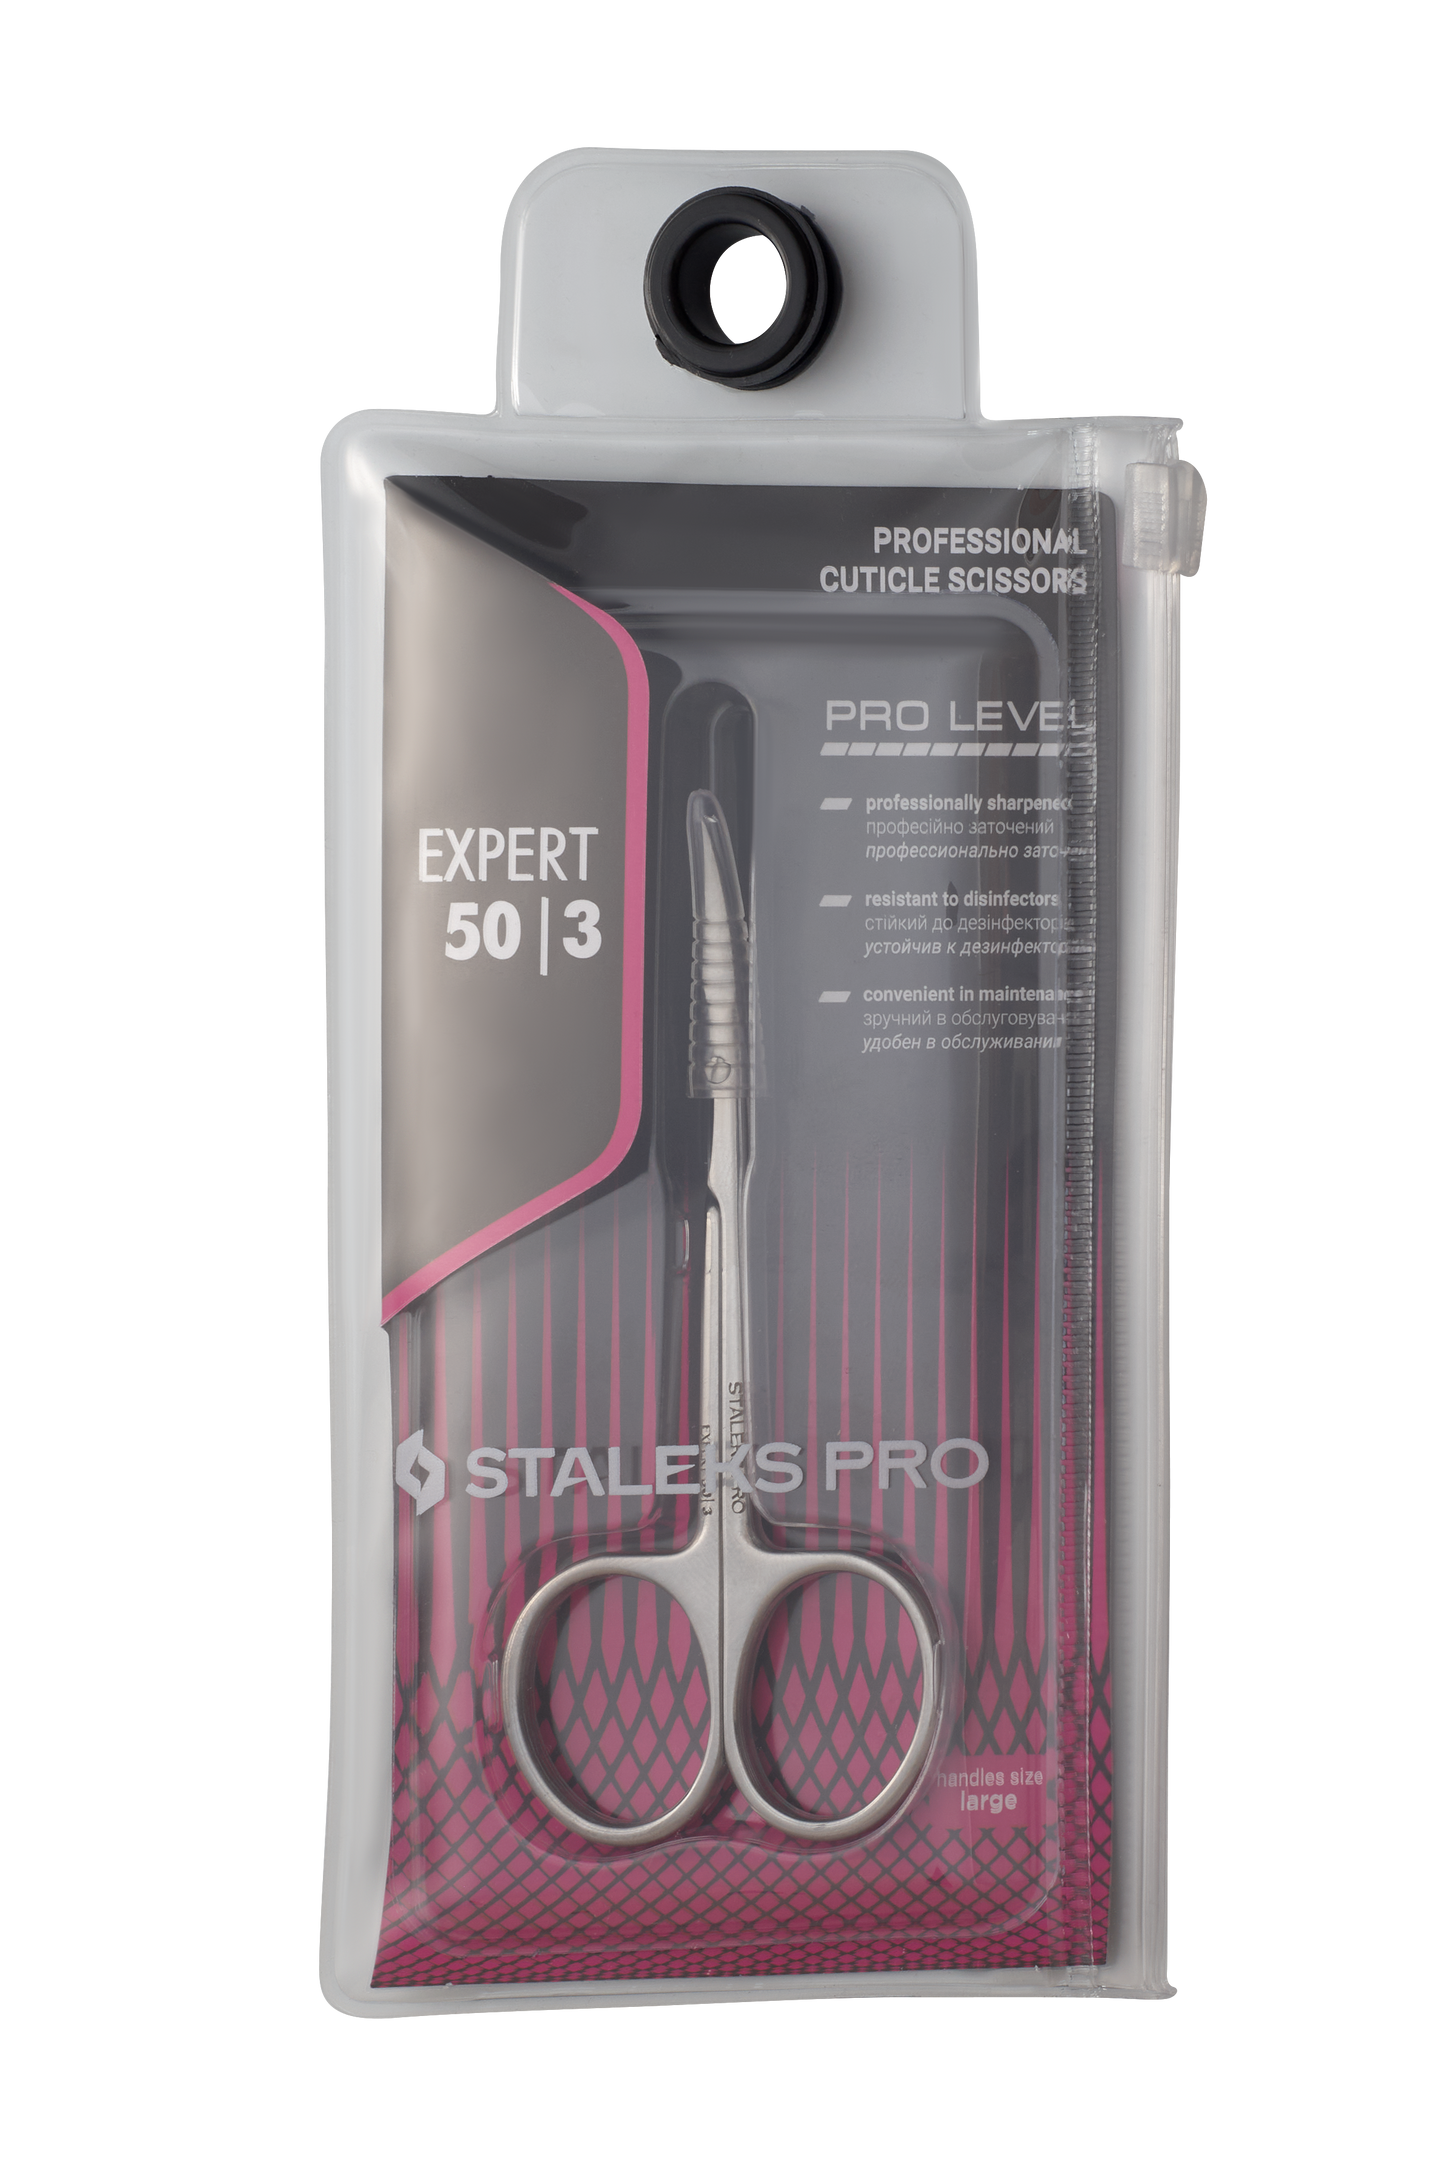 Professional cuticle scissors EXPERT 50 TYPE 3